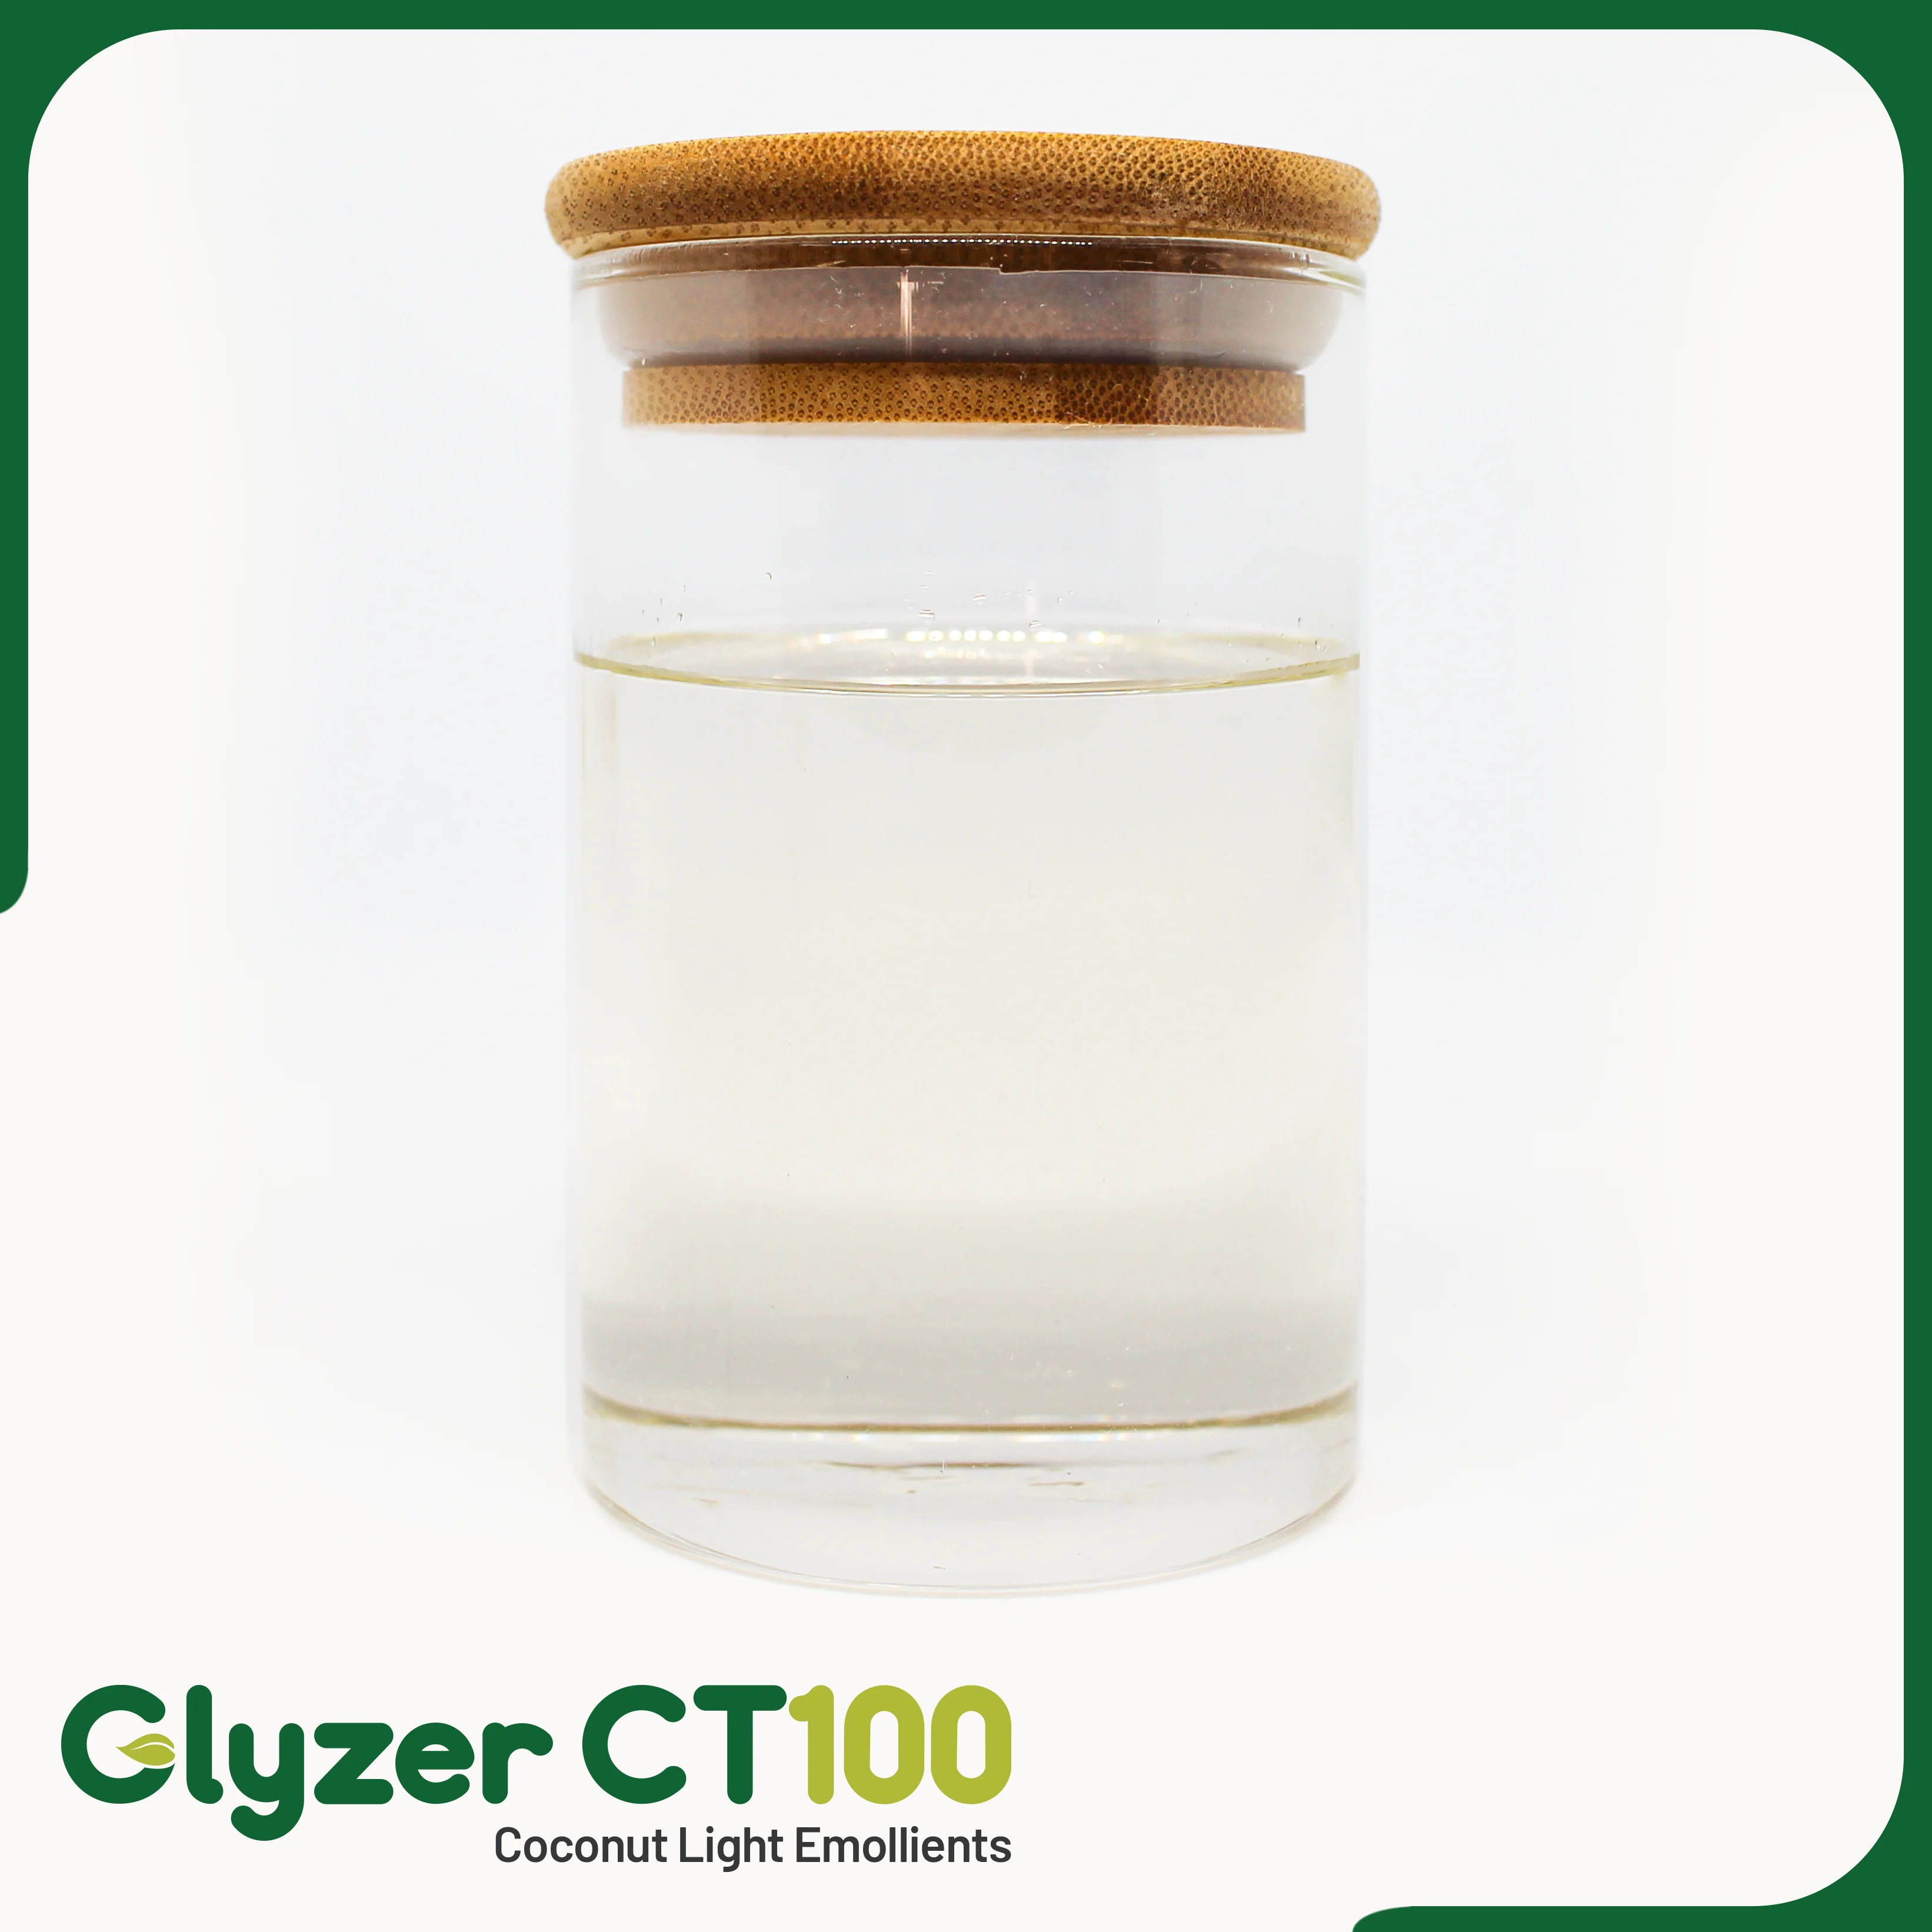 Glyzer-CT100